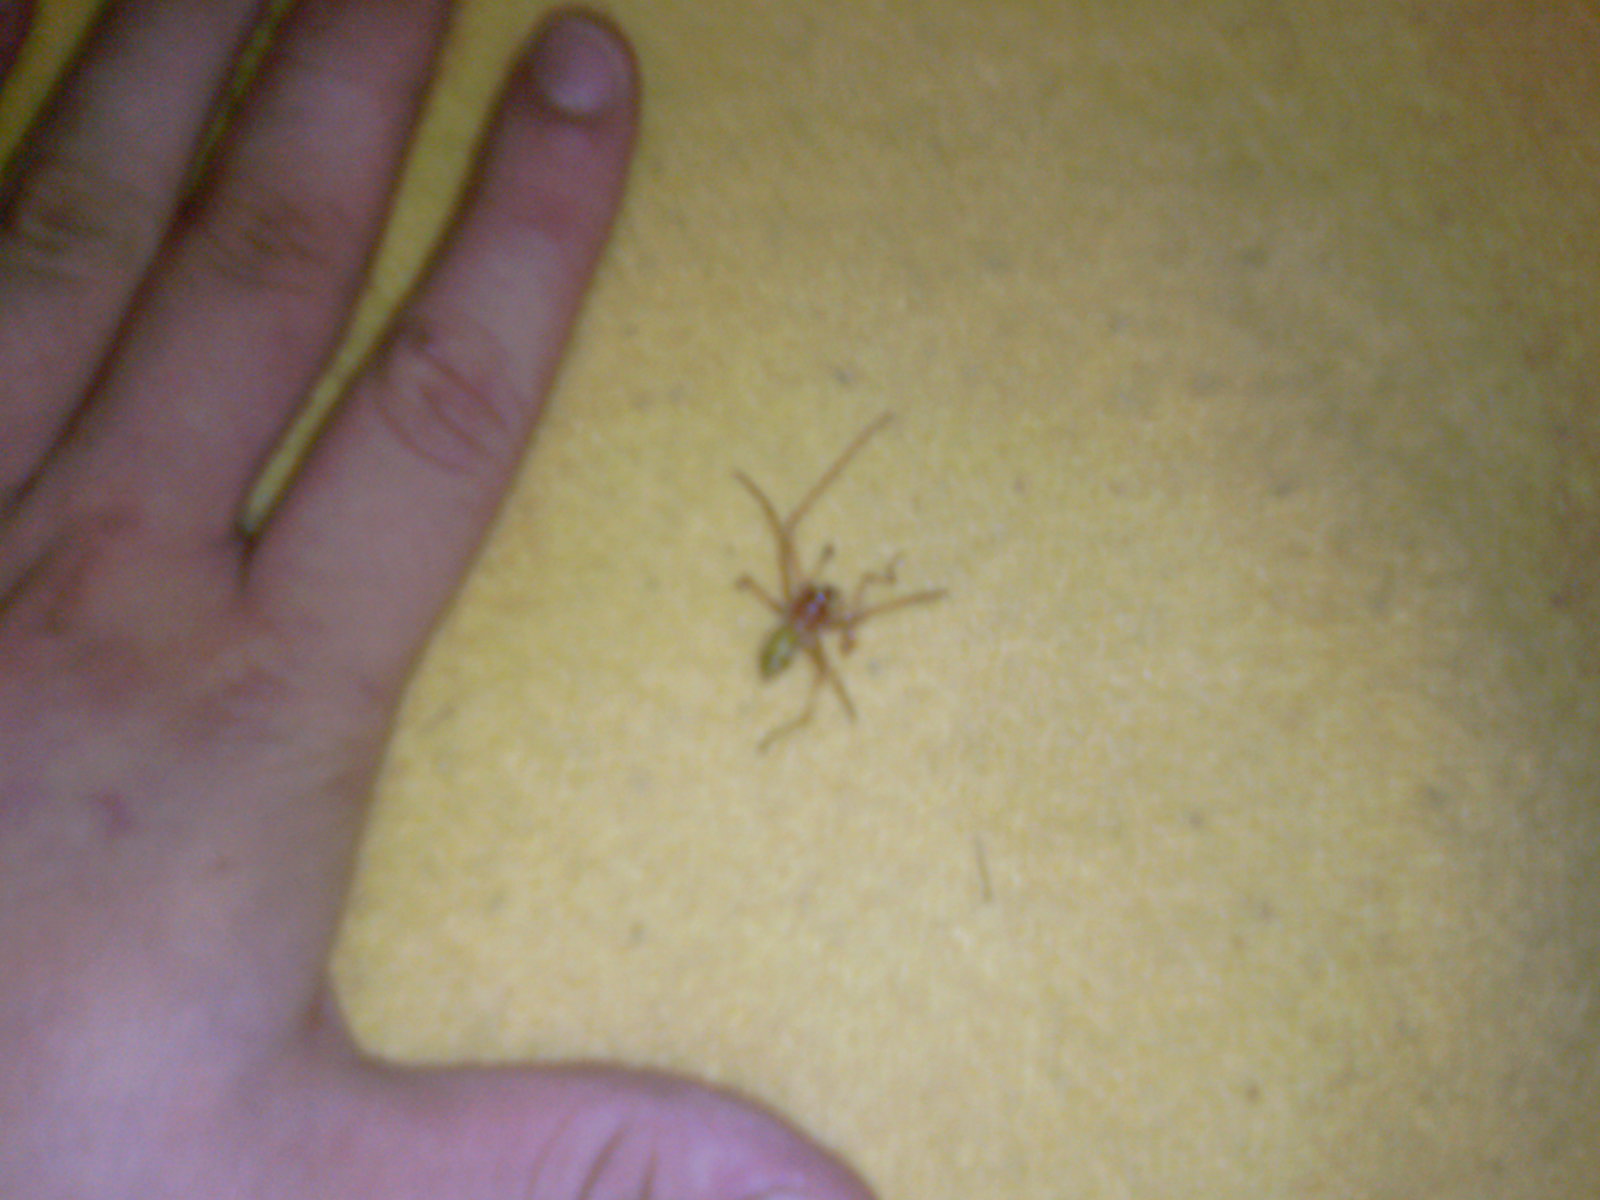 grosso ragno giallo e rosso..(Cheiracenthium sp?).